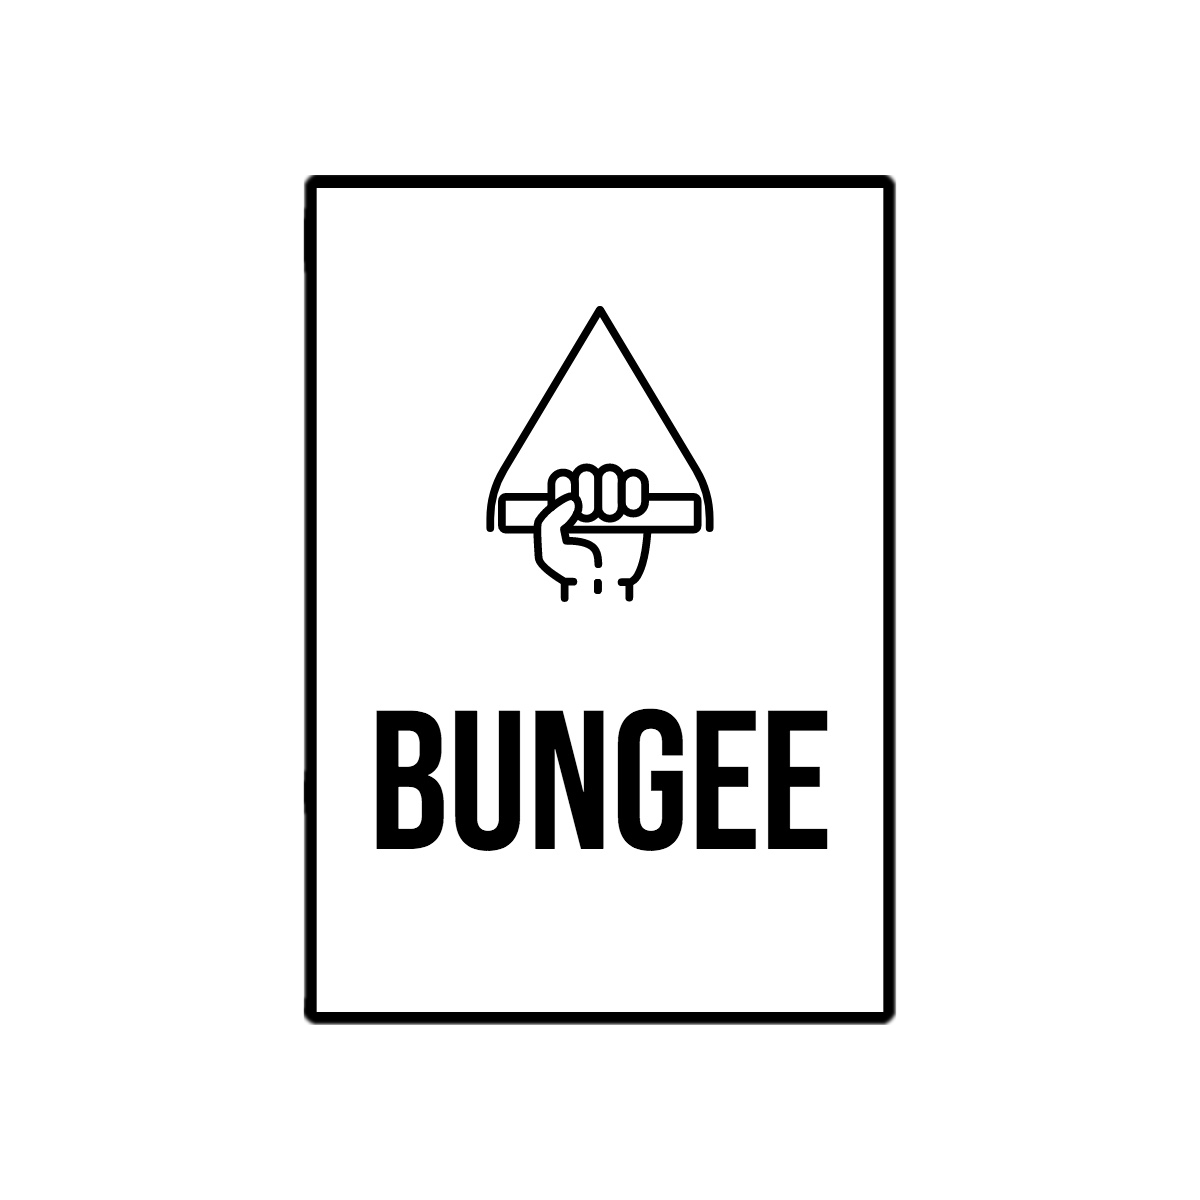 BUNGEE coupons logo